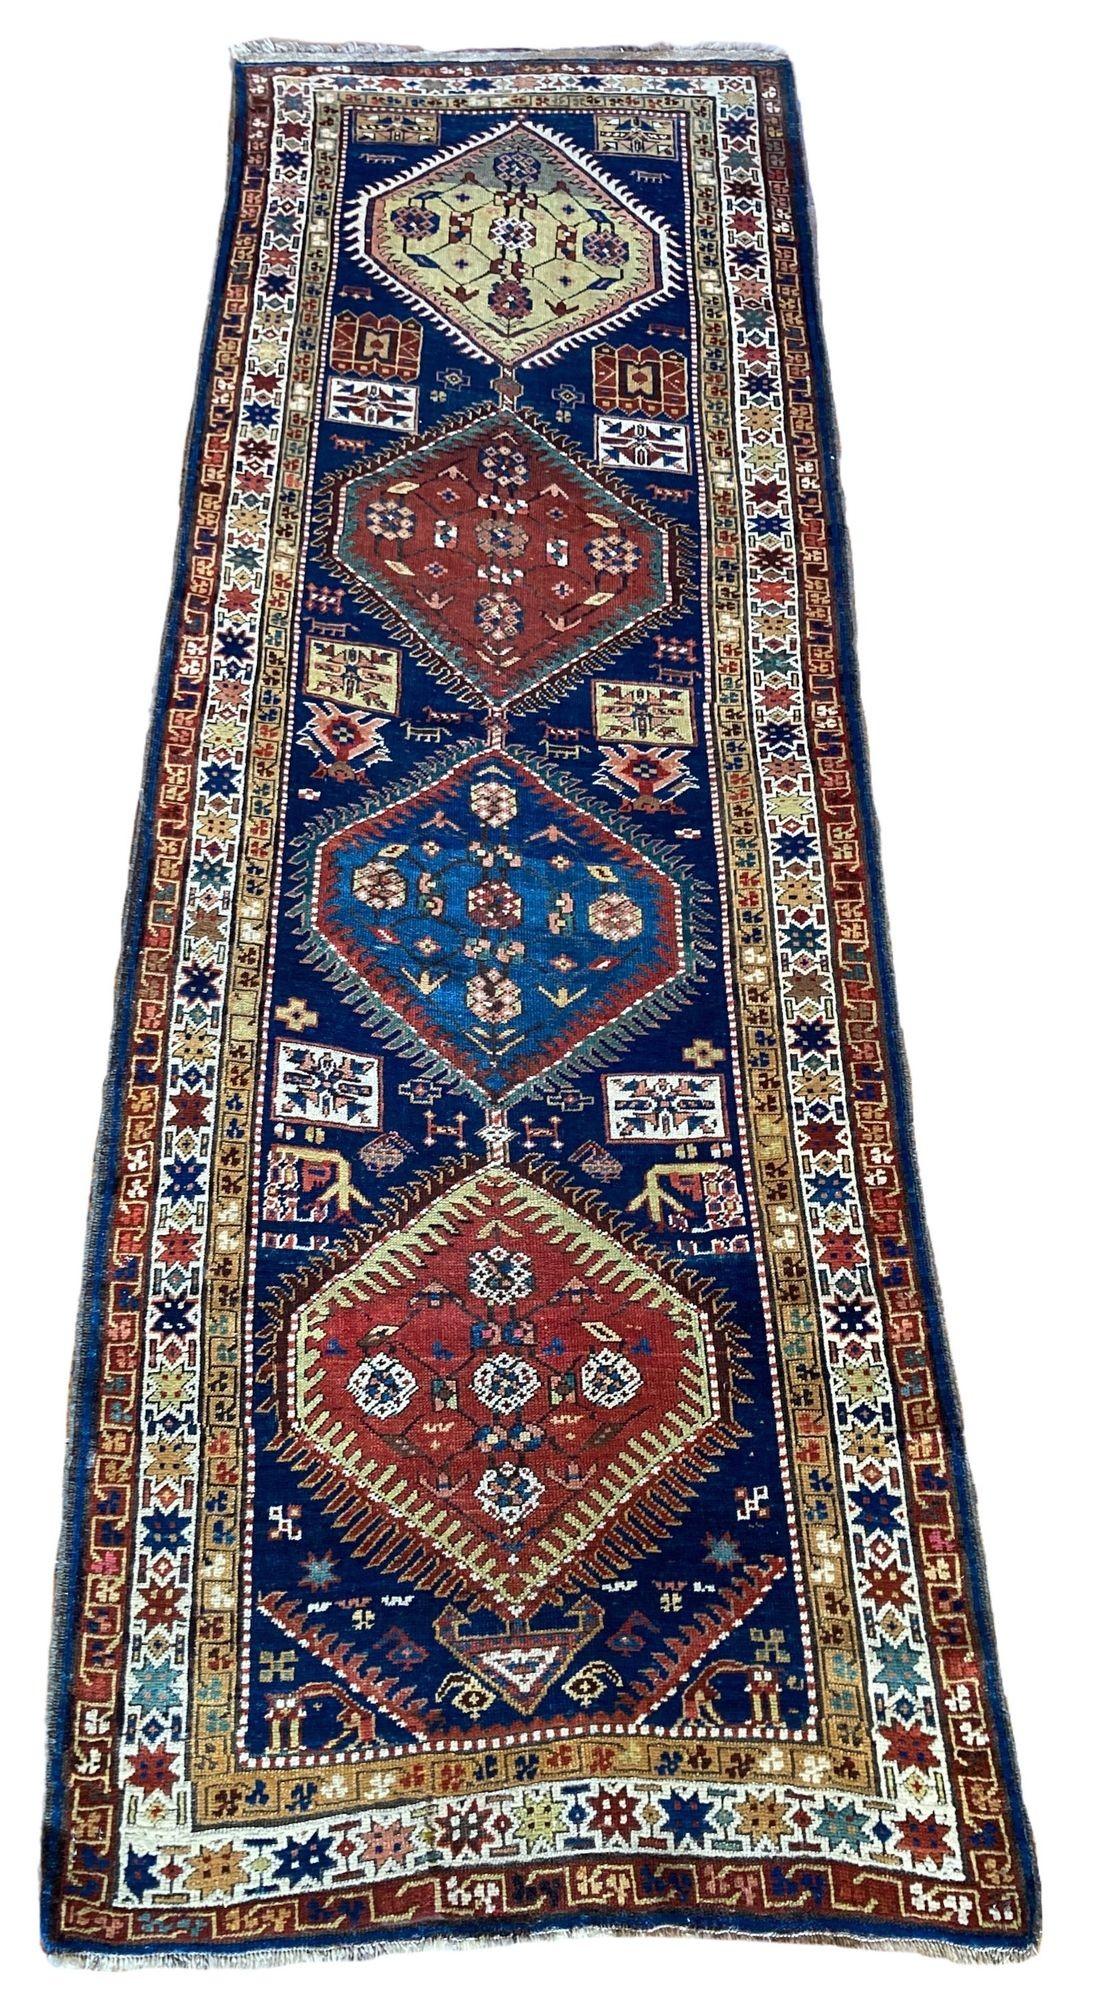 Un fabuleux chemin de table ancien, tissé à la main dans les montagnes du Caucase, dans le sud de l'Azerbaïdjan, vers 1900. Le motif comporte 4 médaillons sur un champ bleu marine et une bordure ivoire. Beaucoup de jolies couleurs secondaires et